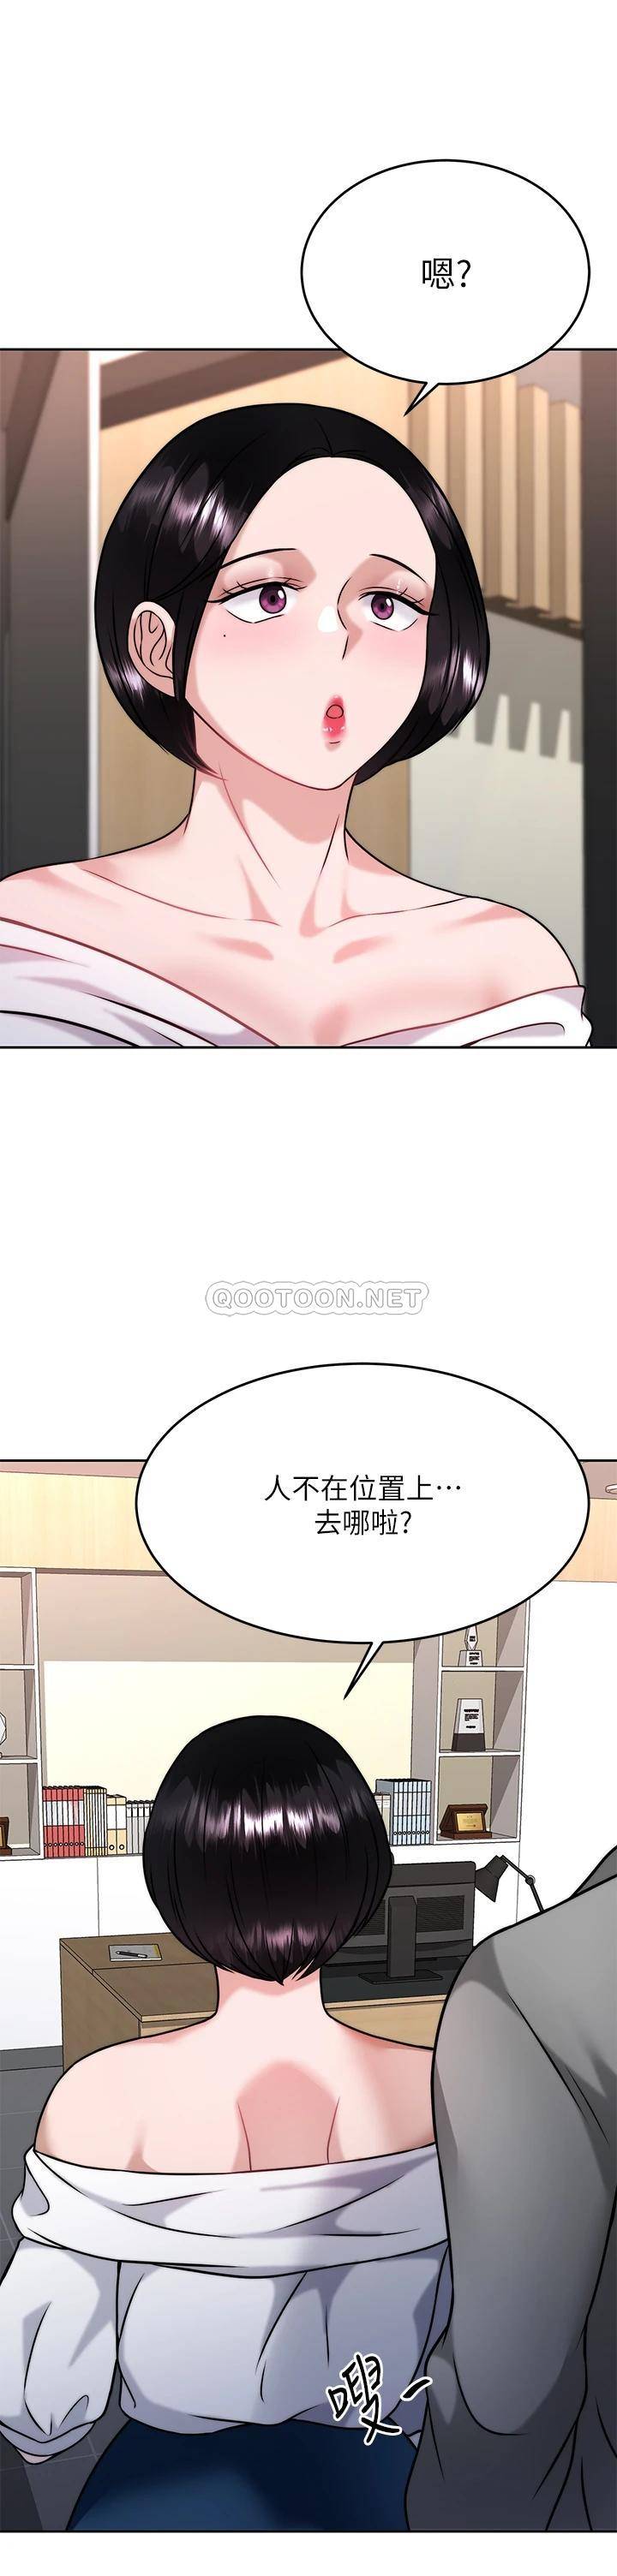 催眠治欲师  第31话偷偷自慰被发现?! 漫画图片1.jpg